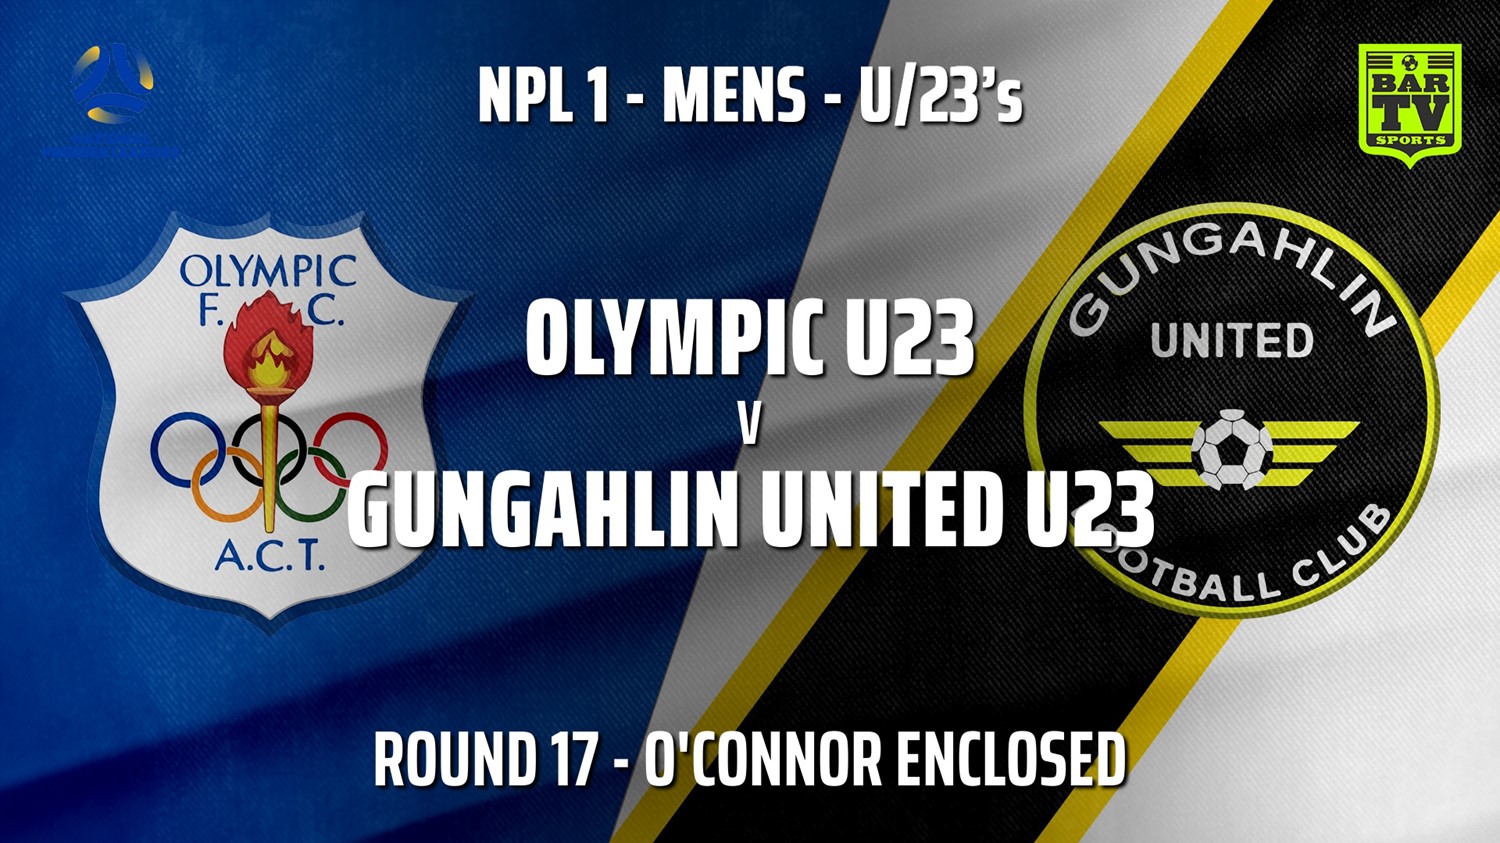 210807-Capital NPL U23 Round 17 - Canberra Olympic U23 v Gungahlin United U23 Minigame Slate Image